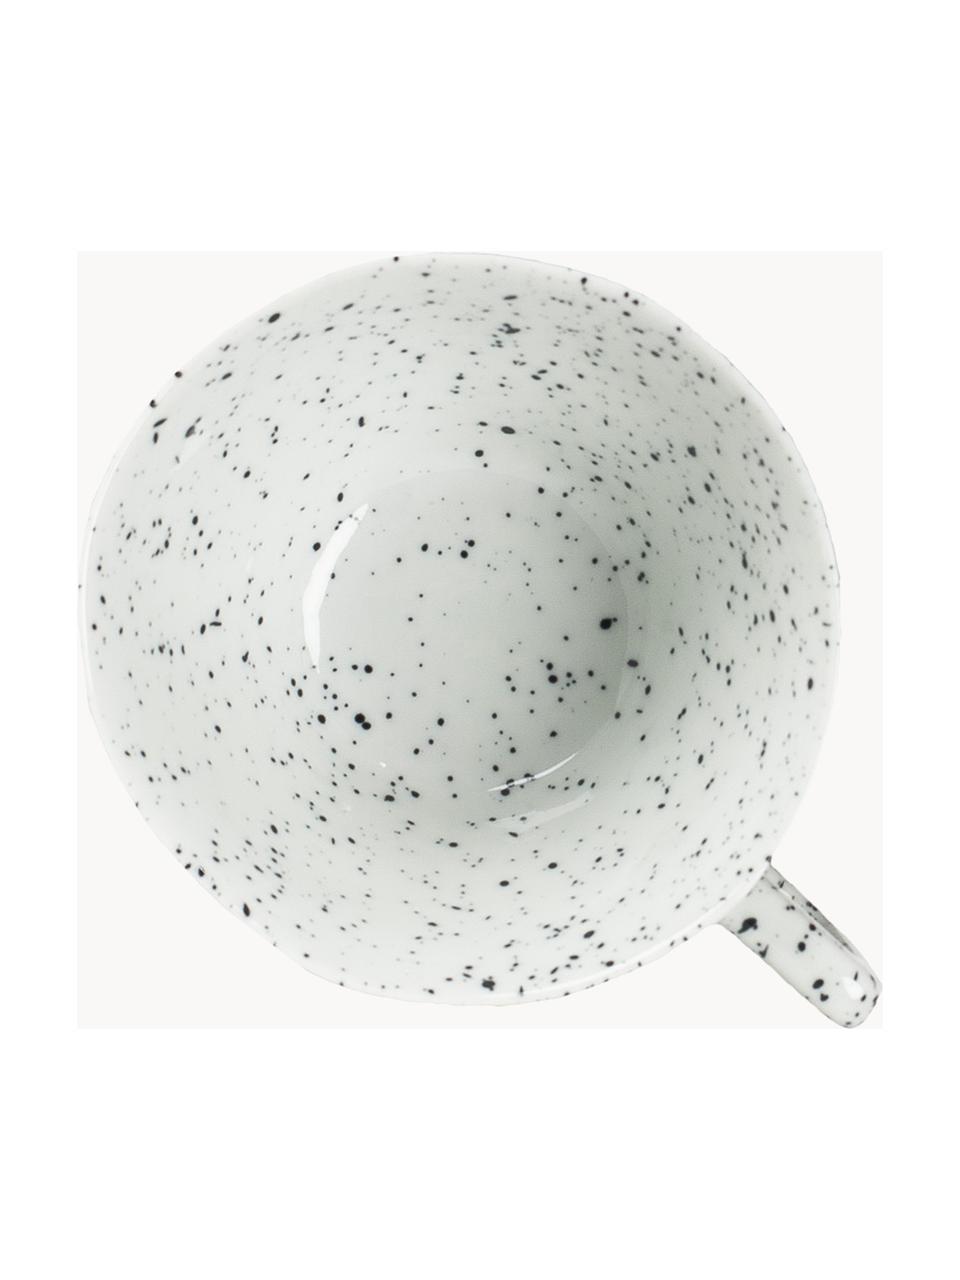 Porzellan-Tasse Poppi, 2 Stück, Porzellan, Weiß, schwarz gesprenkelt, Ø 11 x H 6 cm, 230 ml